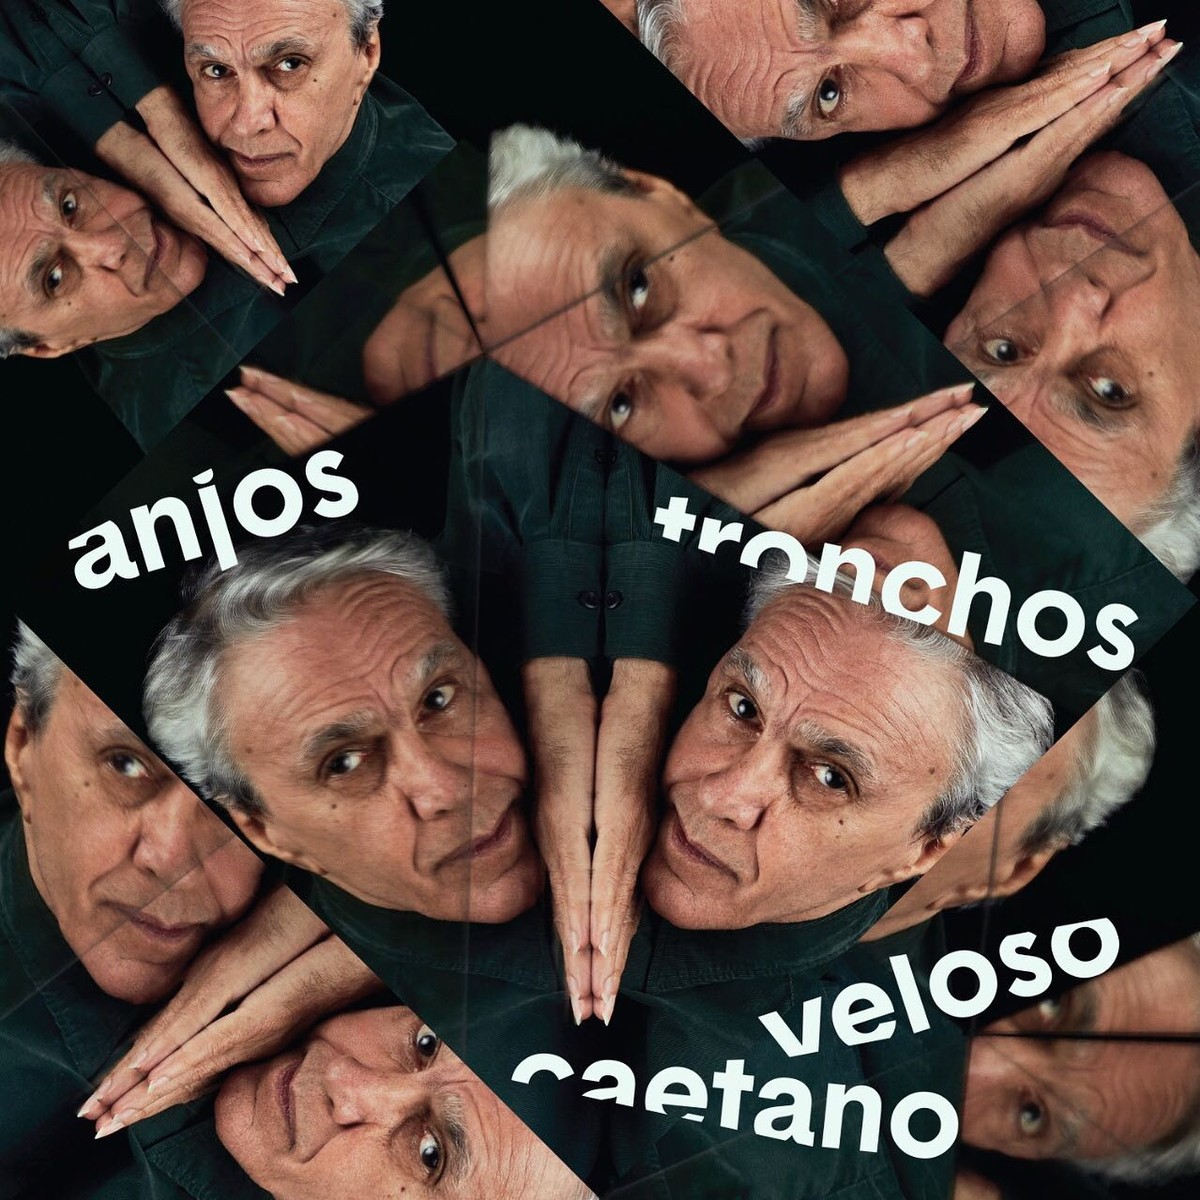 Caetano Veloso revela la portada de 'Anjos tronchos', single con 'canción sumamente densa' | blog de mauro ferreira